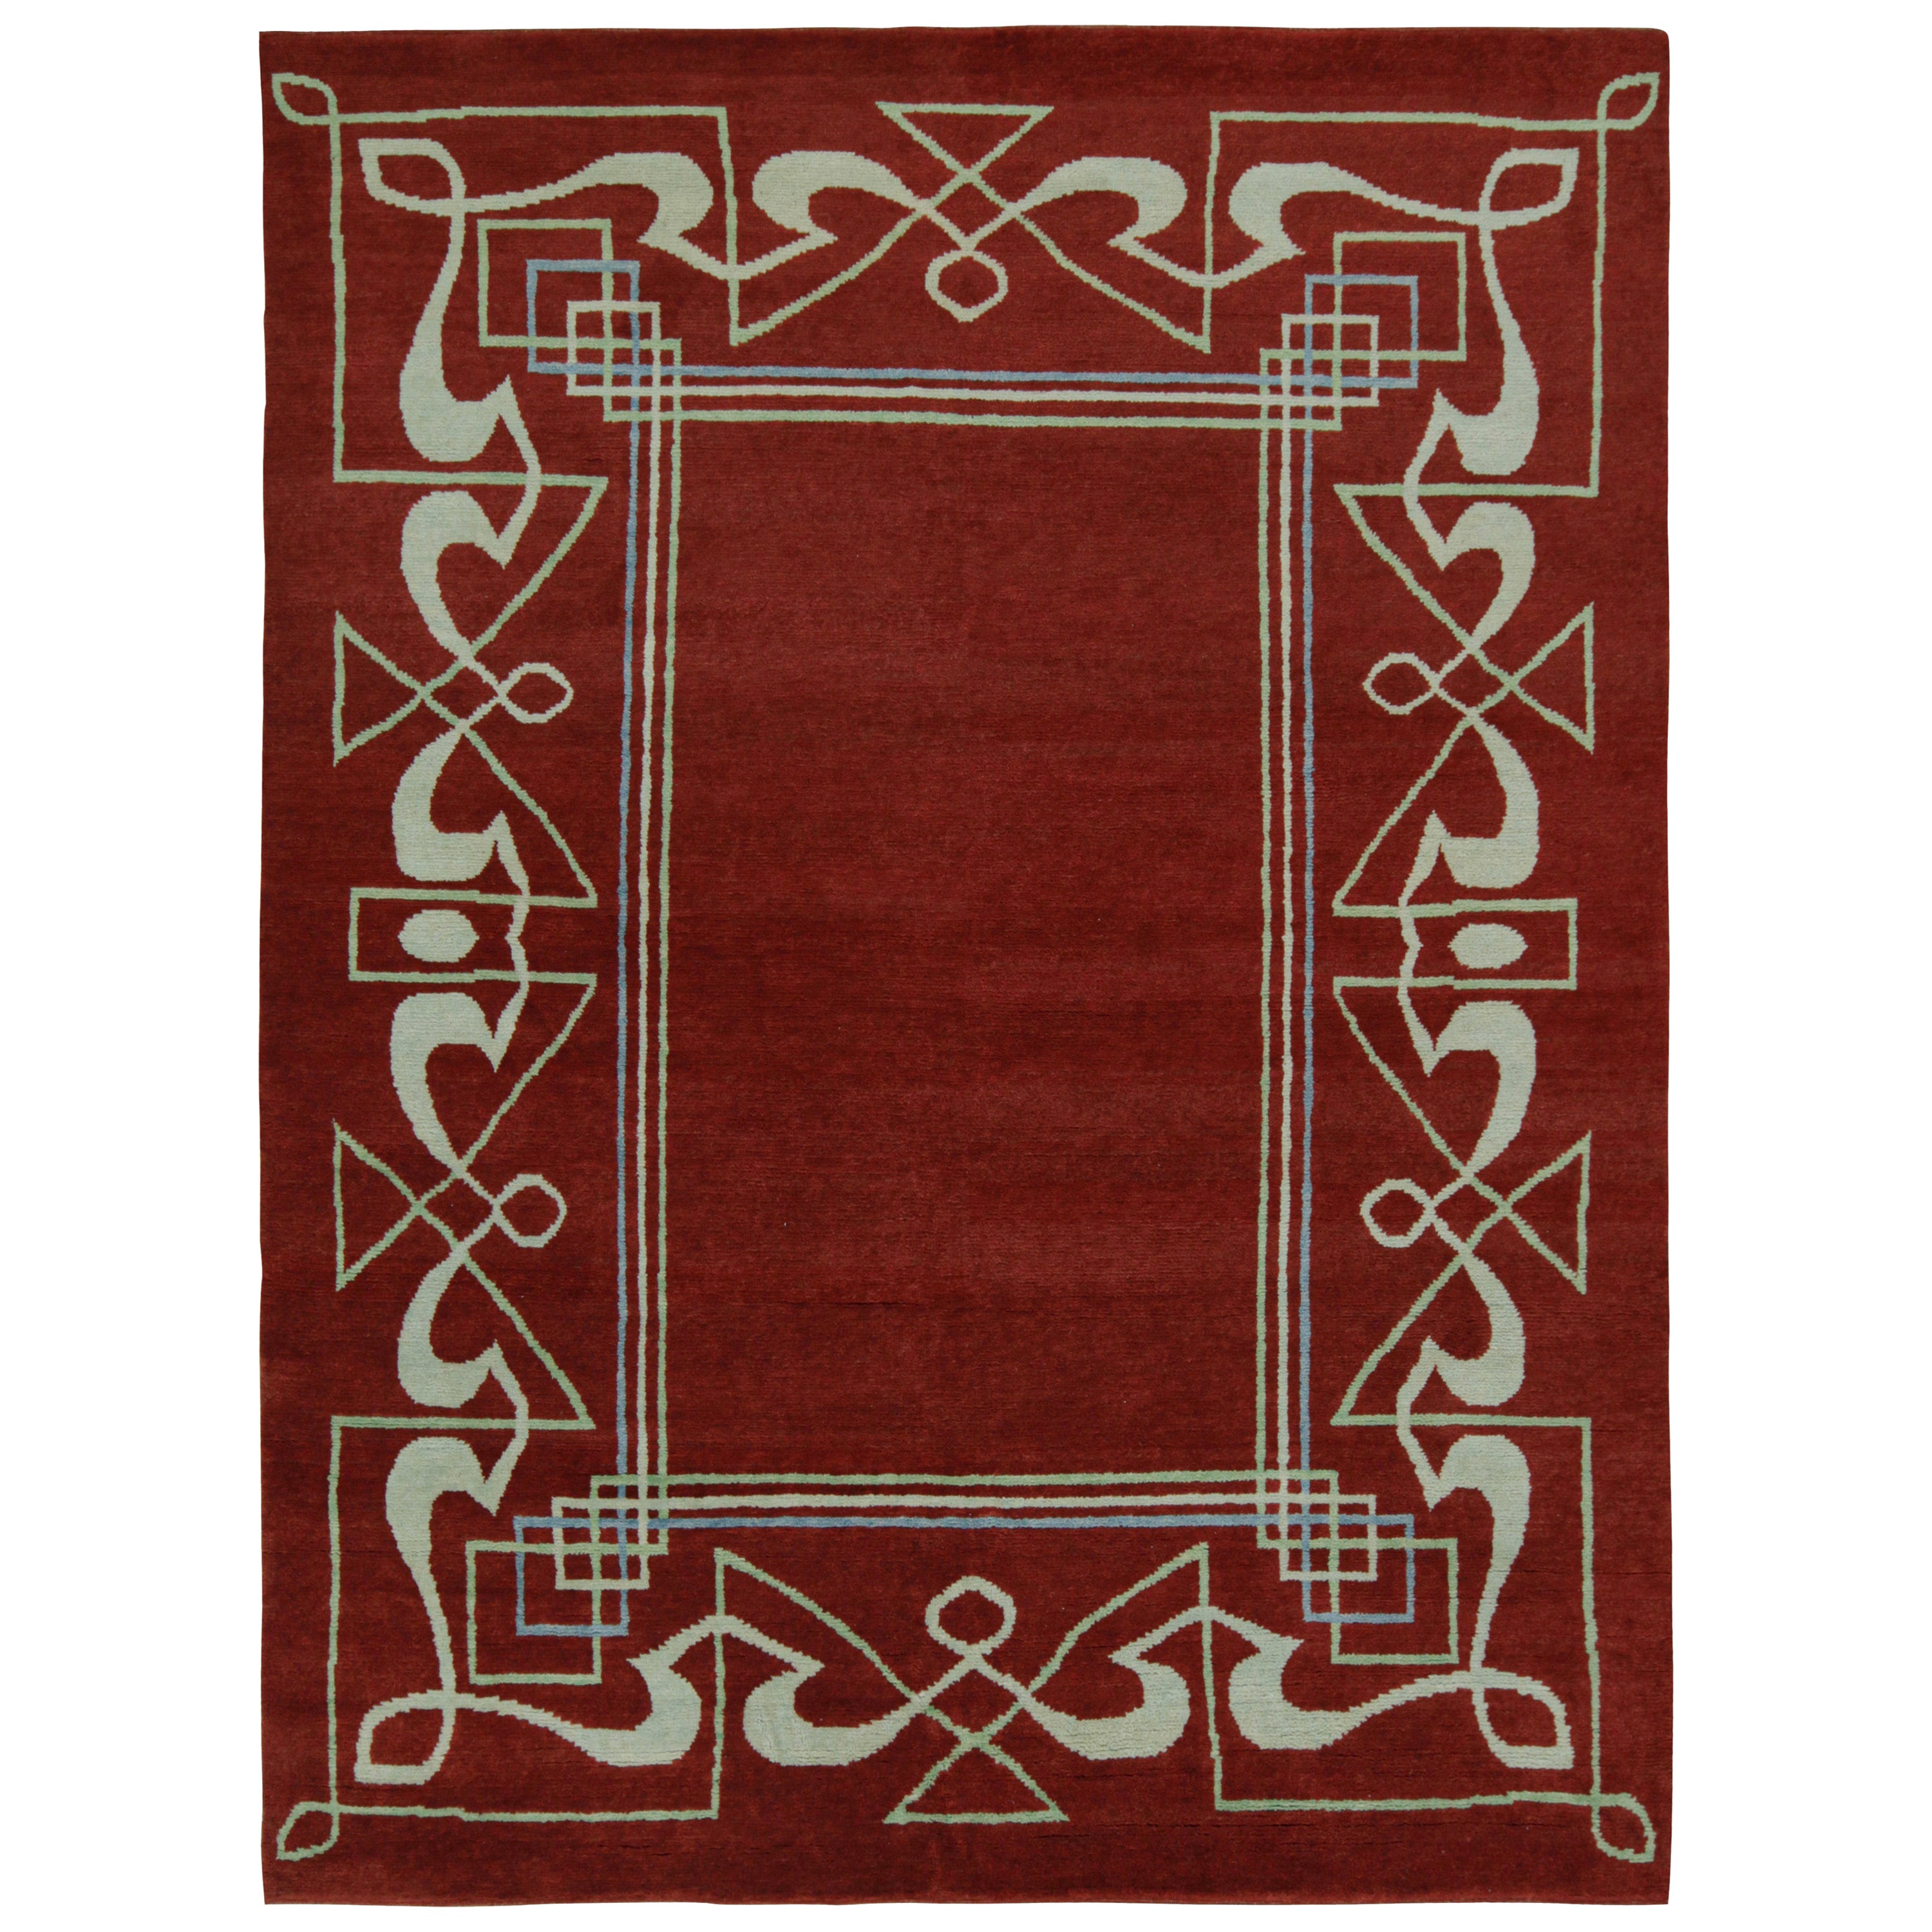 Rug & Kilim's French Style Art Deco Teppich in Rot und Weiß mit geometrischen Mustern